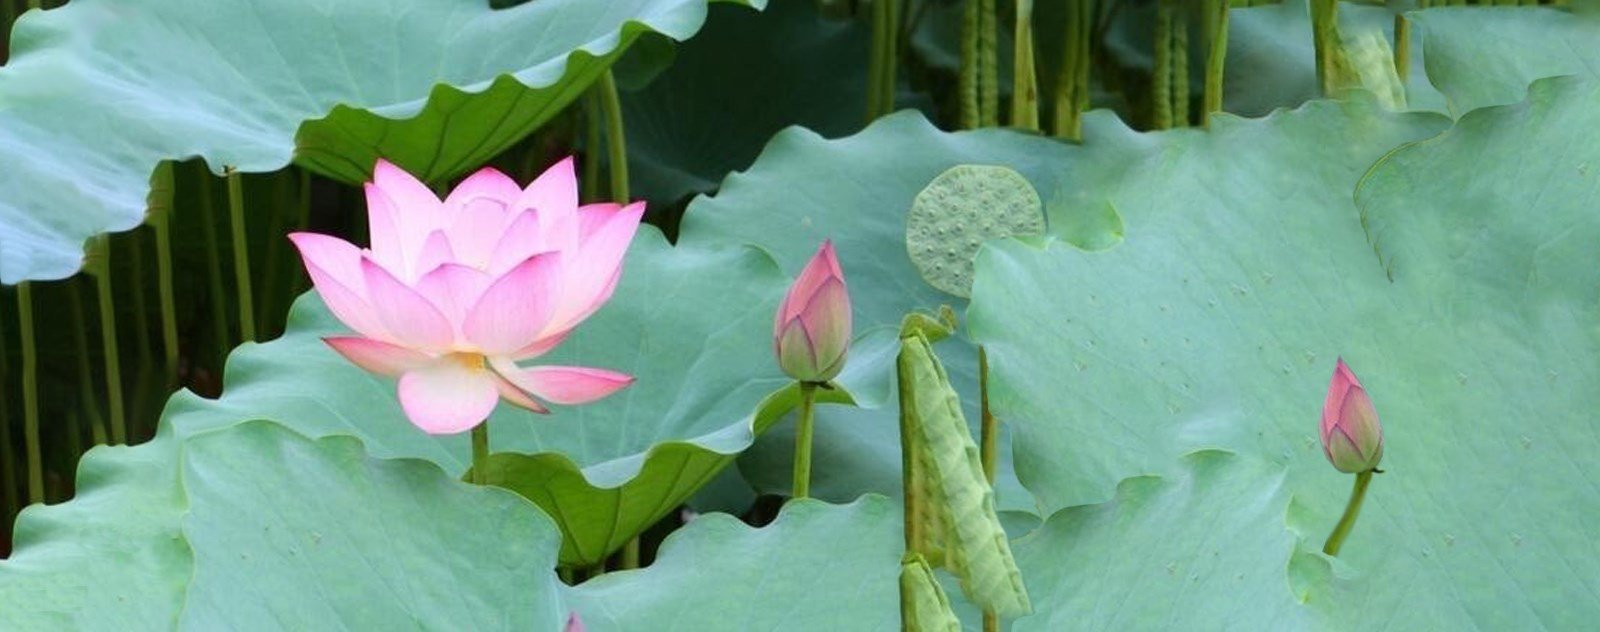 bassin pour lotus